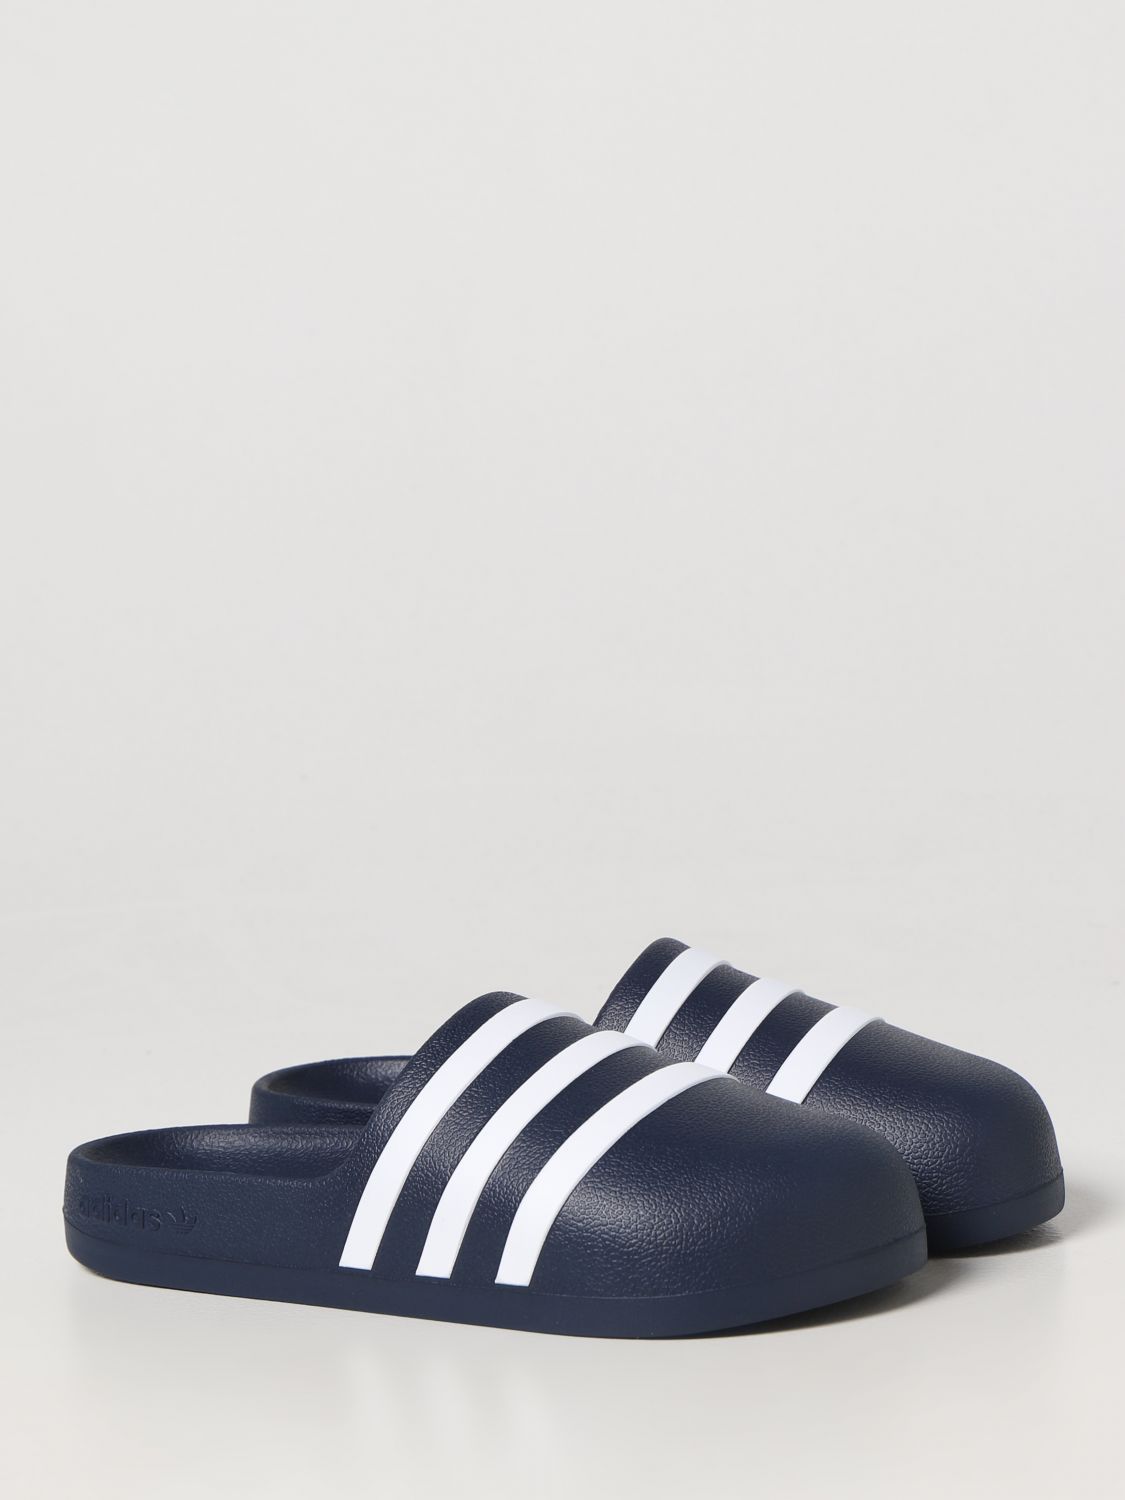 ADIDAS Herren Sandalen - Blau | Adidas Originals HQ7220 online auf